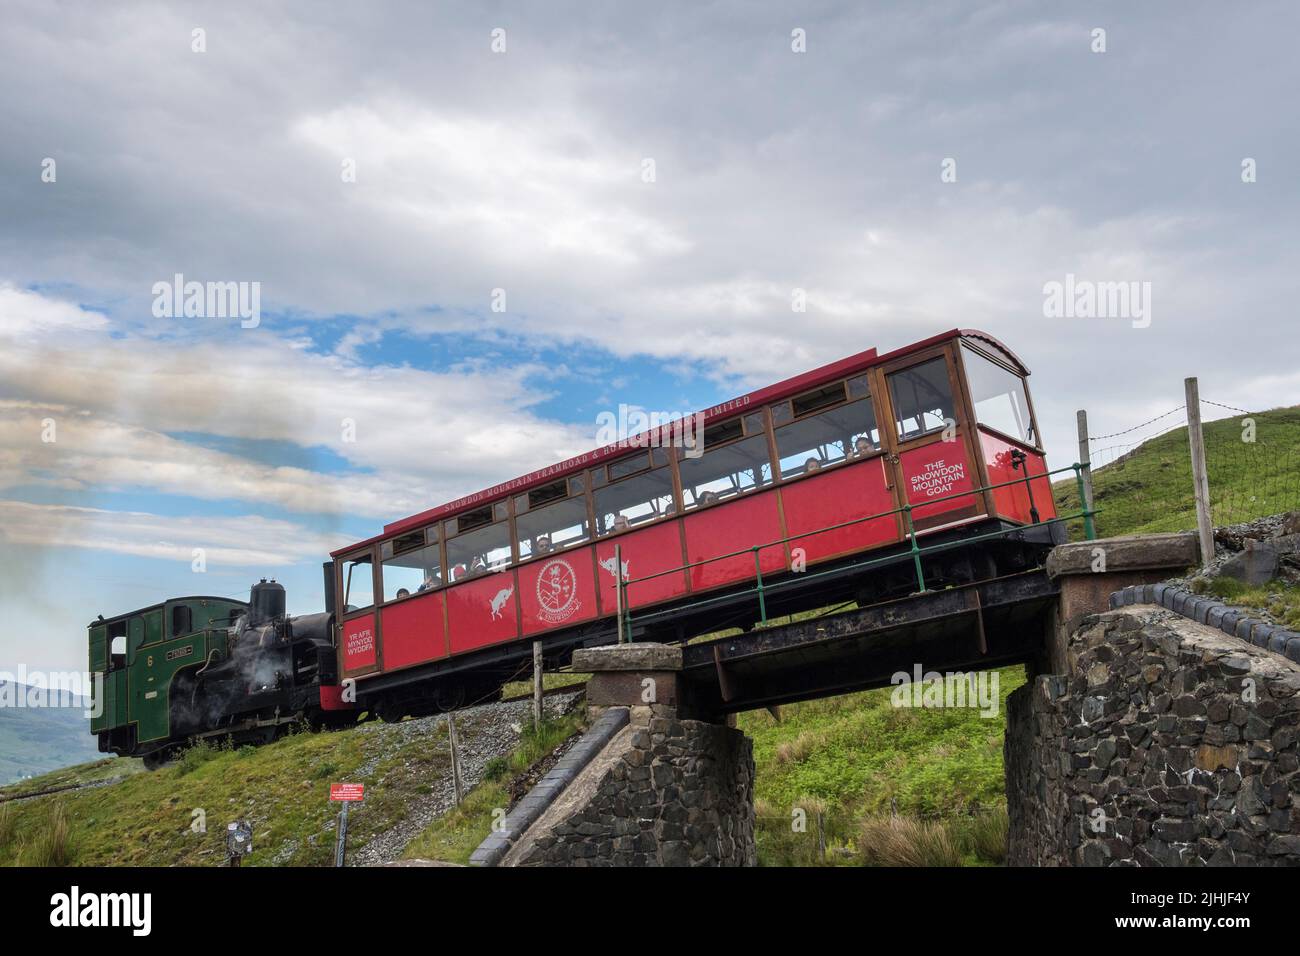 El tren de vapor de patrimonio Padarn sube cuesta arriba en Snowdon Railway en las montañas del Parque Nacional de Snowdonia. Llanberis, Gwynedd, Gales del Norte, Reino Unido, Gran Bretaña Foto de stock